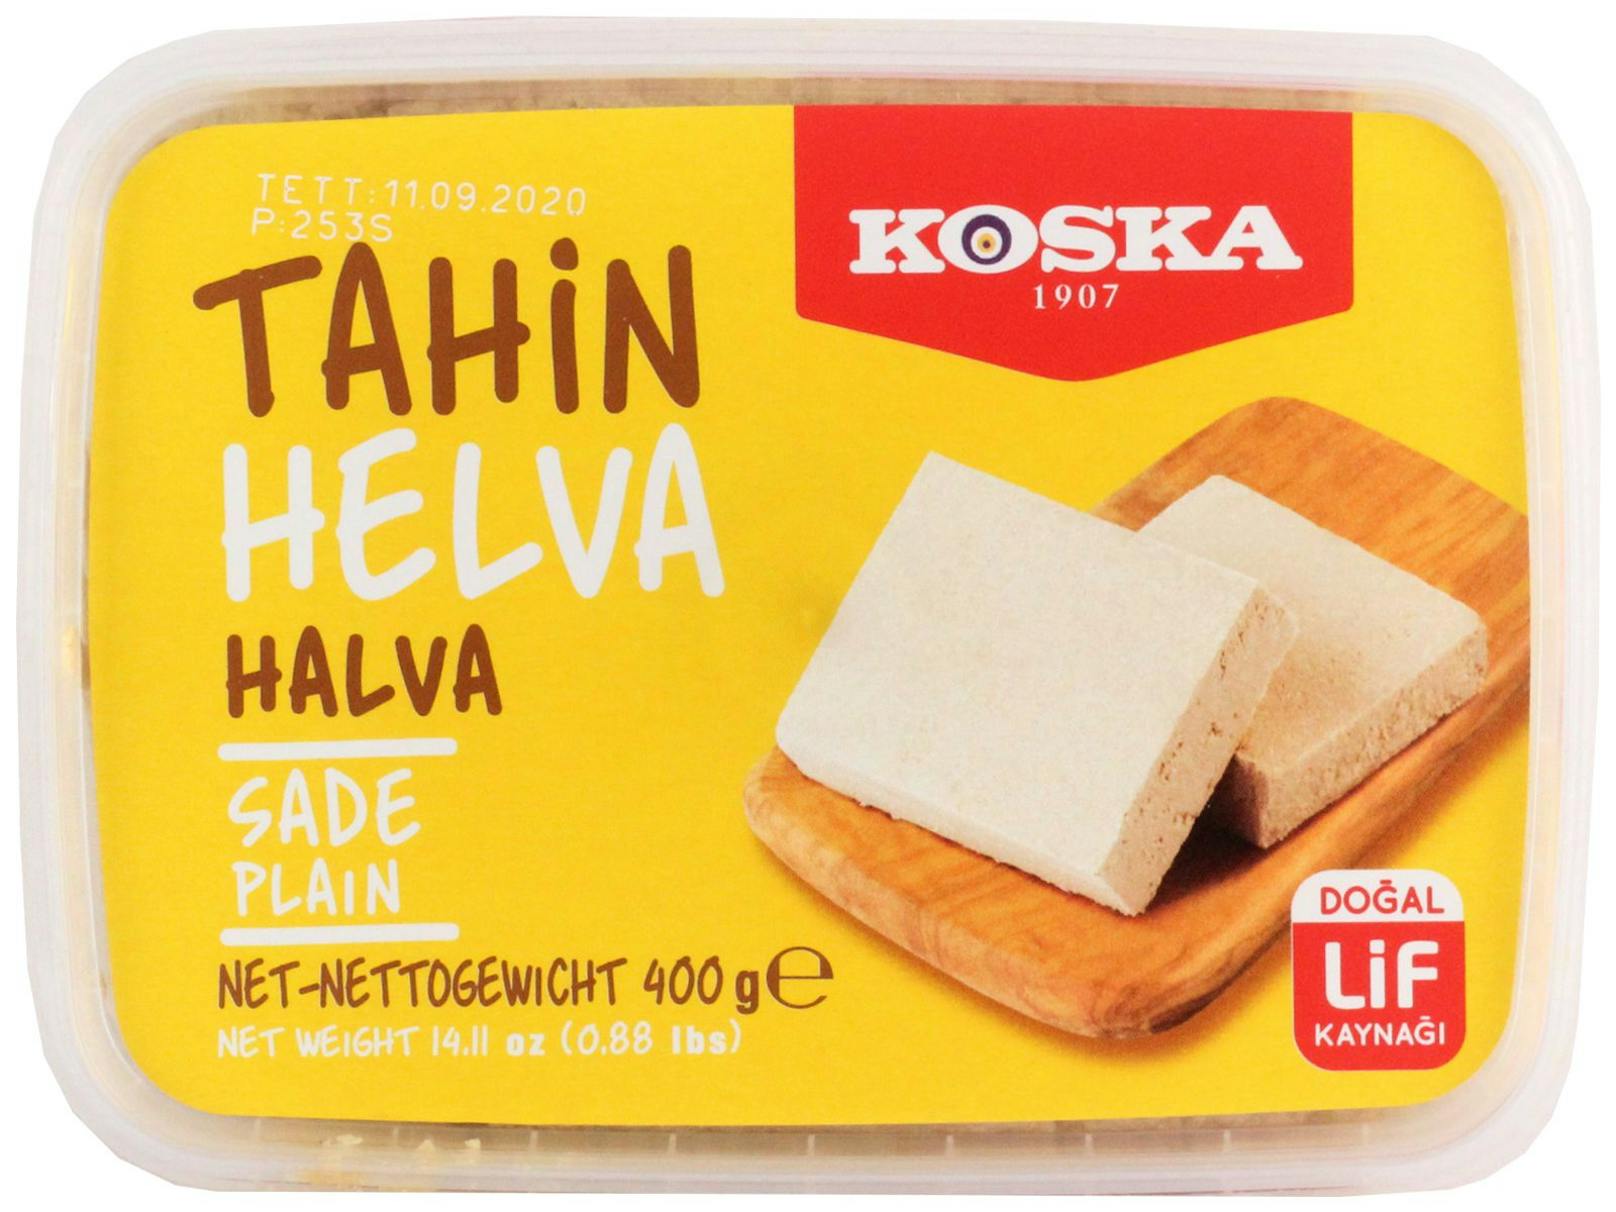 Die Vanille-Sesampaste "Koska Tahin Helva" wird wegen Salmonellen-Gefahr zurückgerufen.